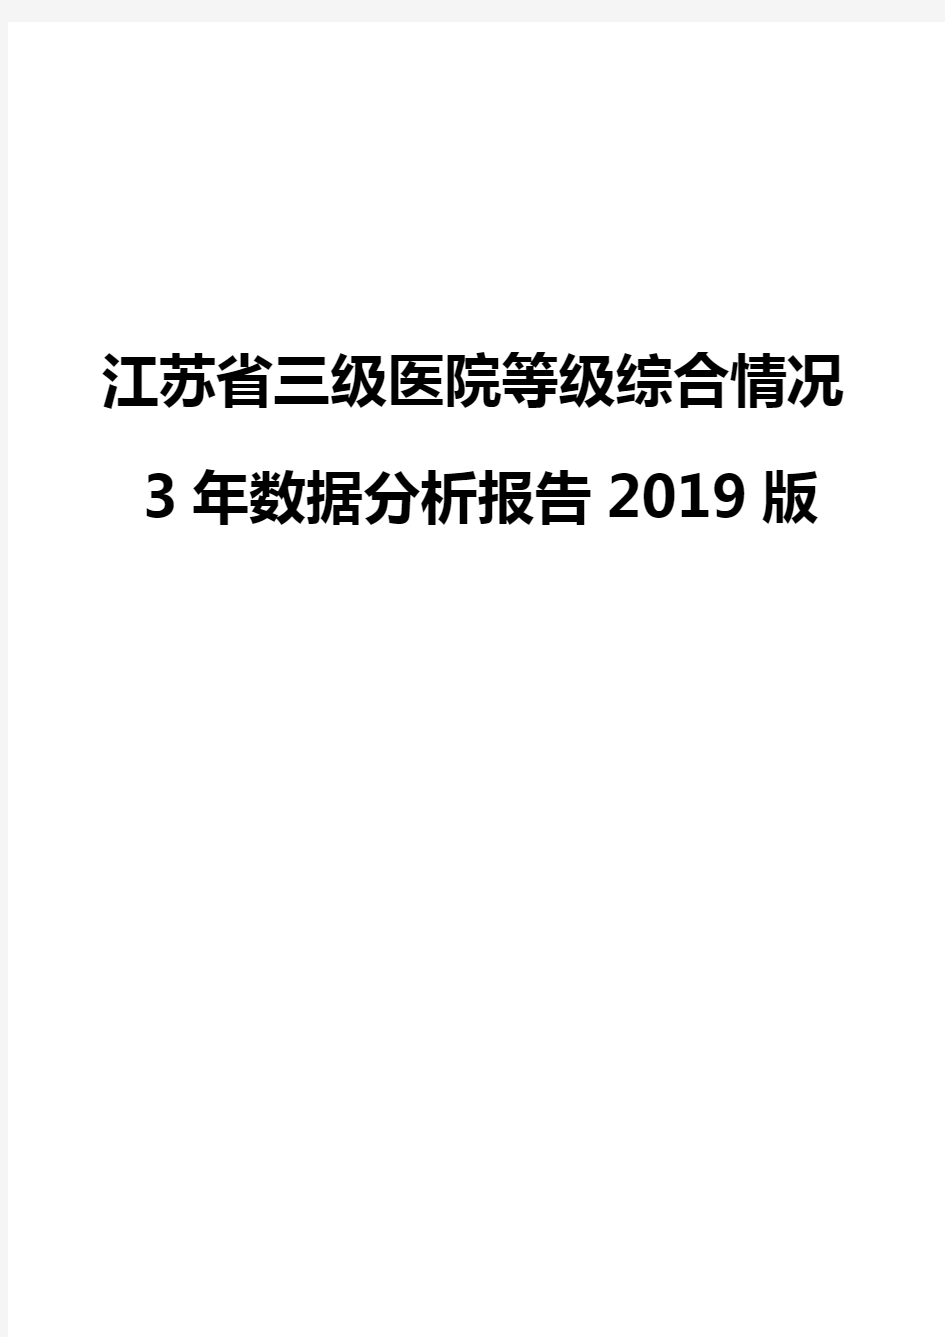 江苏省三级医院等级综合情况3年数据分析报告2019版